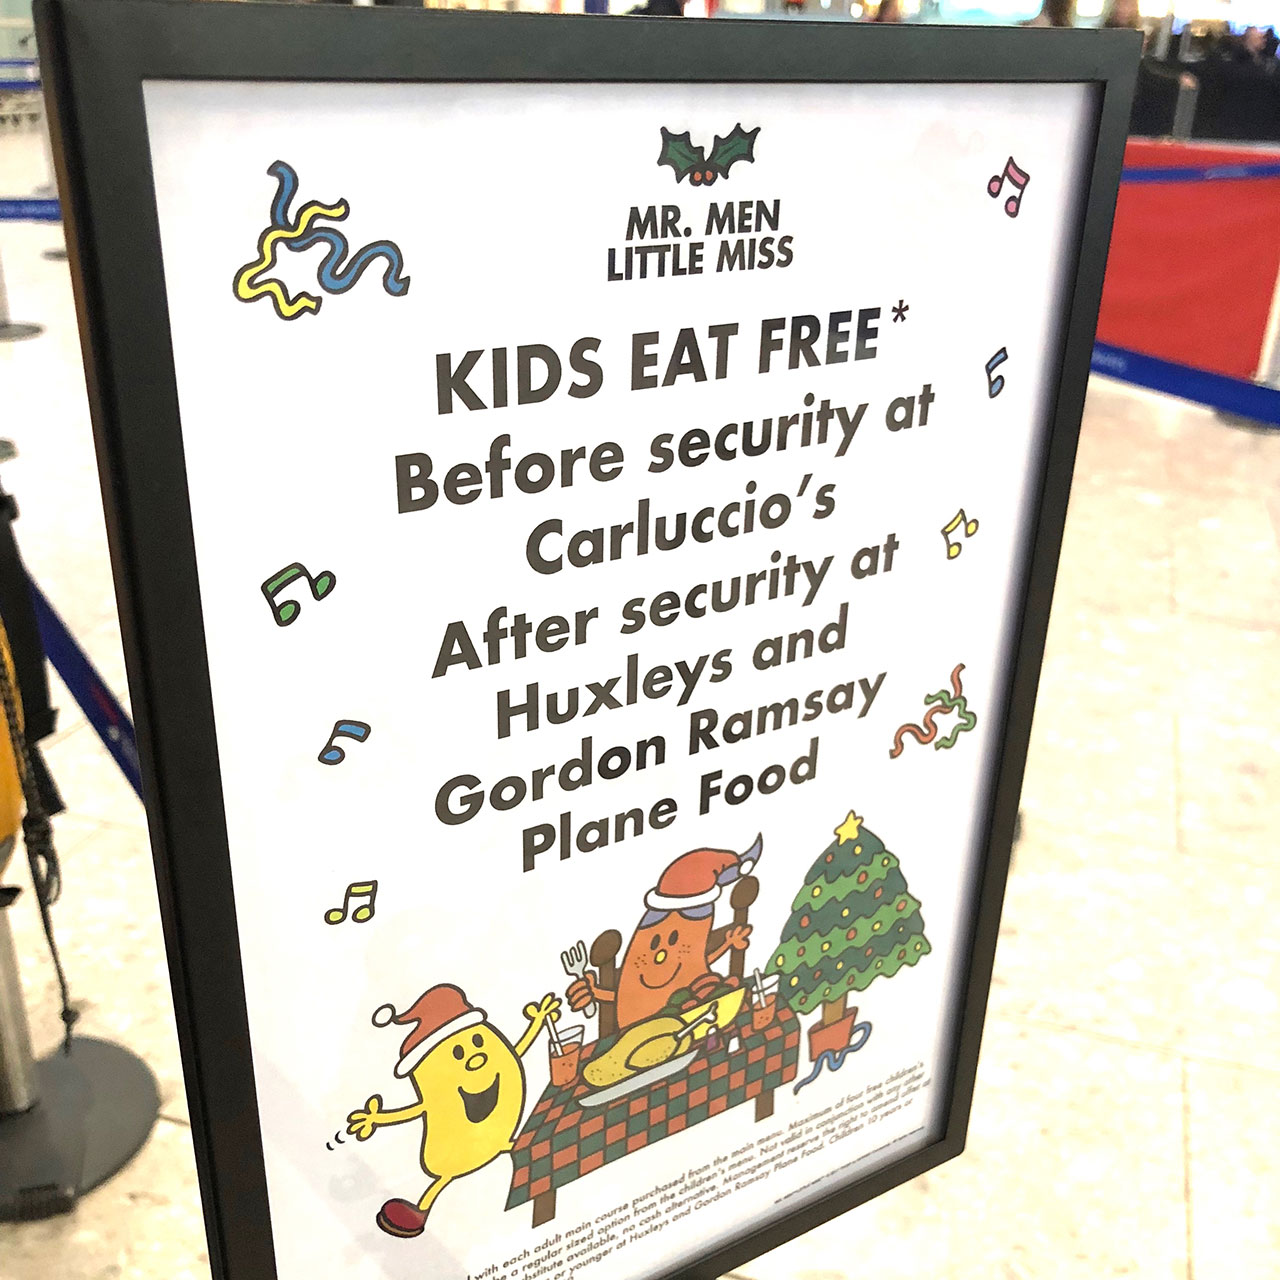 ヒースロー空港内には、子どもの食事が無料のレストランがある。